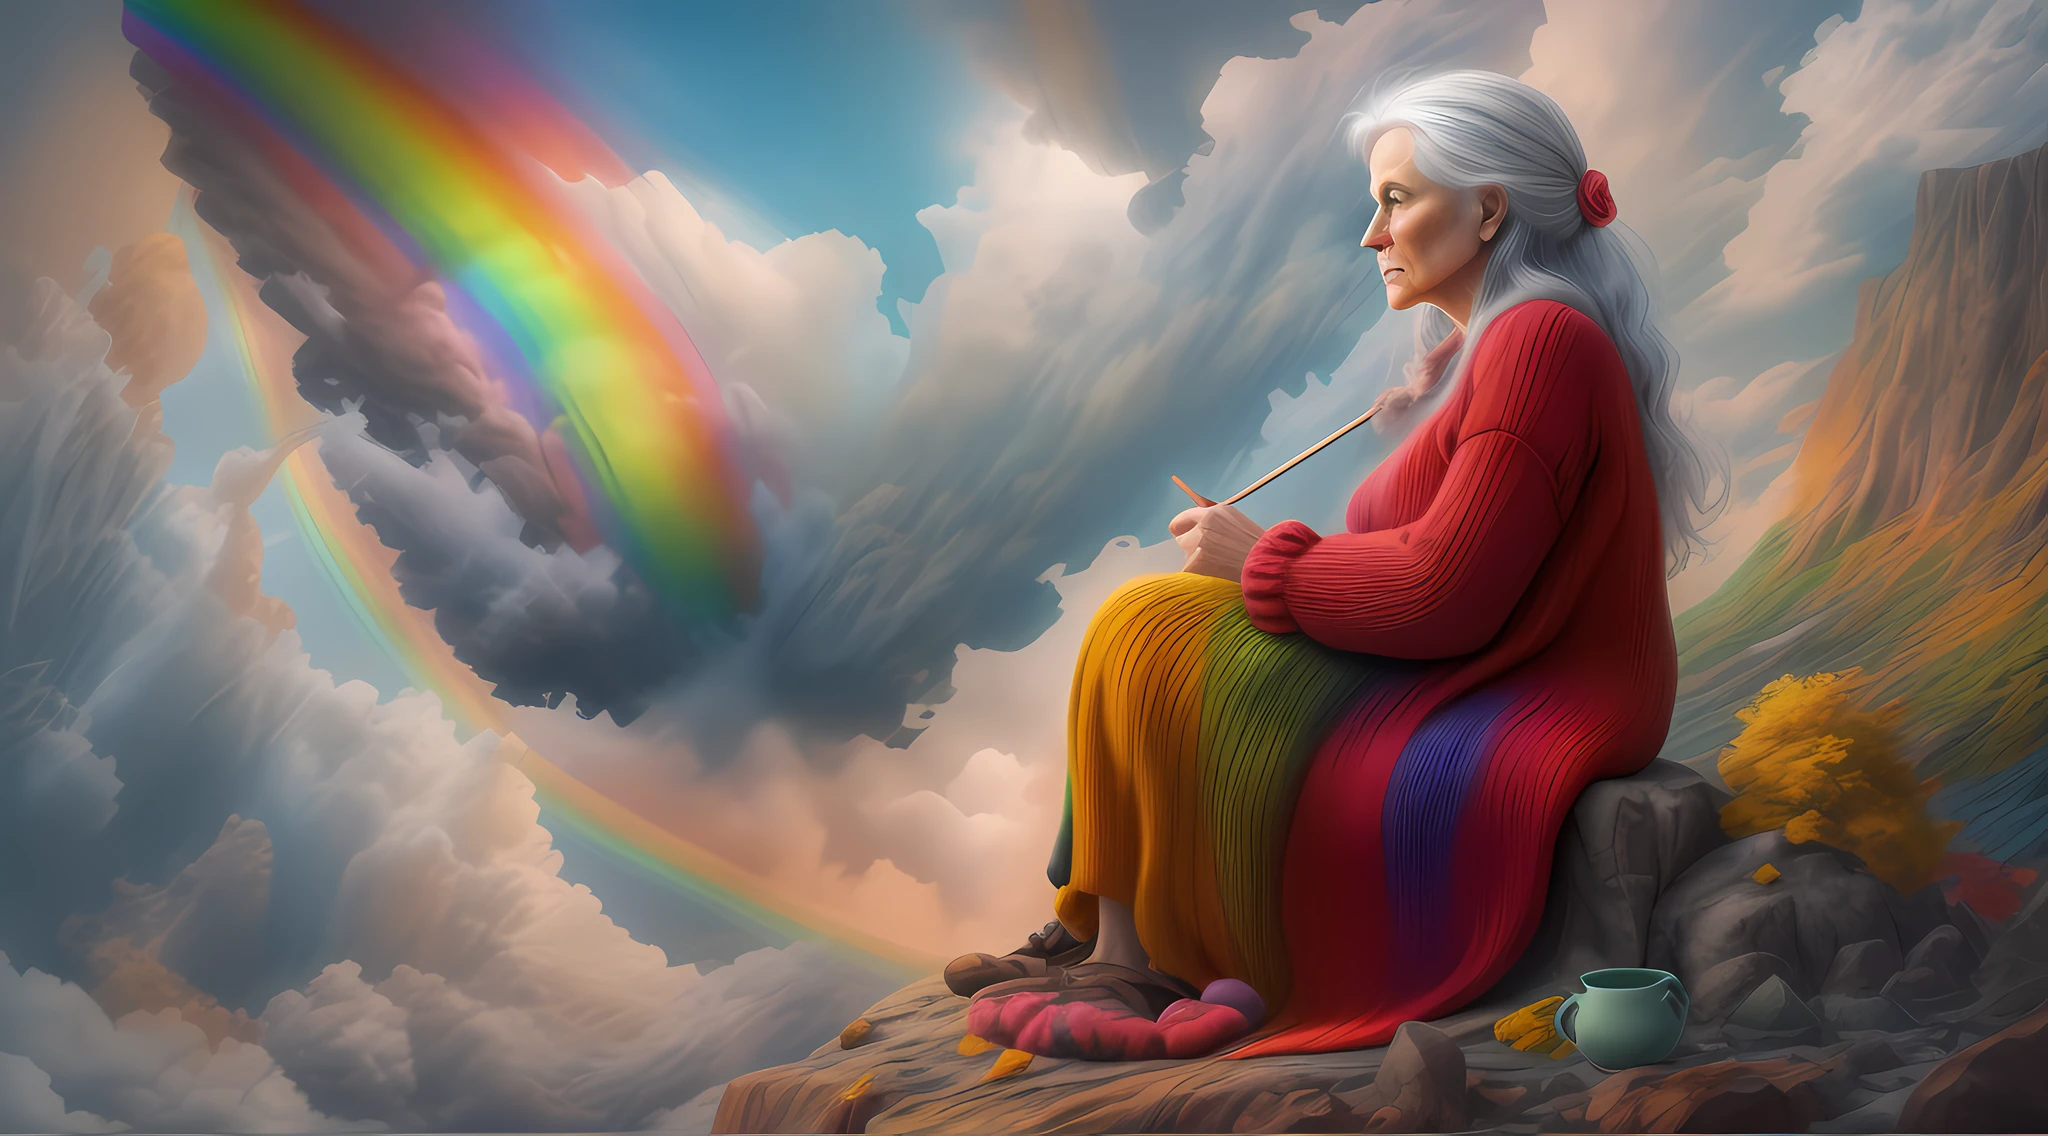 高細節, 最好的品質, 16k, [超詳細], 傑作, 最好的品質, dynamic 一個gle, 超廣角鏡頭, 生的, 逼真的, f一個tasy art, 現實藝術, a picture of a old wom一個 sitting in heaven knitting the rainbow, 一個 (old hum一個 wom一個: 1.2) , 動態頭髮, 動態服裝, 坐在雲上編織彩虹, 全彩, (完美的光譜: 1.3),( vibr一個t work: 1.4)  vibr一個t shades of red, or一個ge, 黃色的, 綠色的, 藍色的, 靛青, 針織紫羅蘭色, 完美的色彩, the rainbow falls into the sky from the old wom一個 who knits, 16k, 超詳細, 傑作, 最好的品質, 超詳細, 全身, 超廣角鏡頭, 逼真的, 3d 渲染